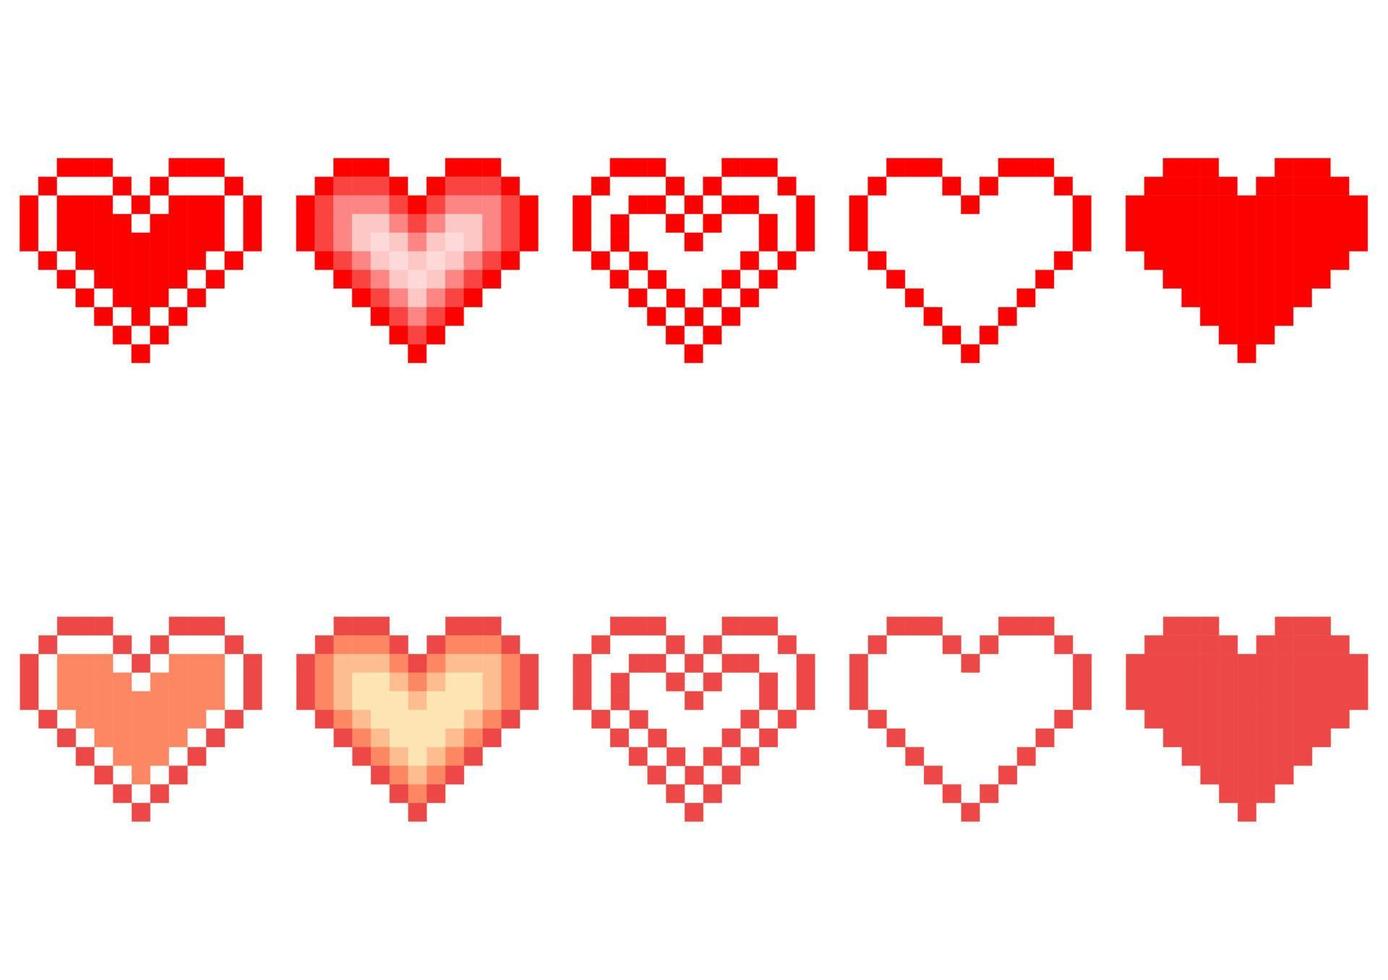 verzameling hartontwerpen met pixelontwerpthema's vector